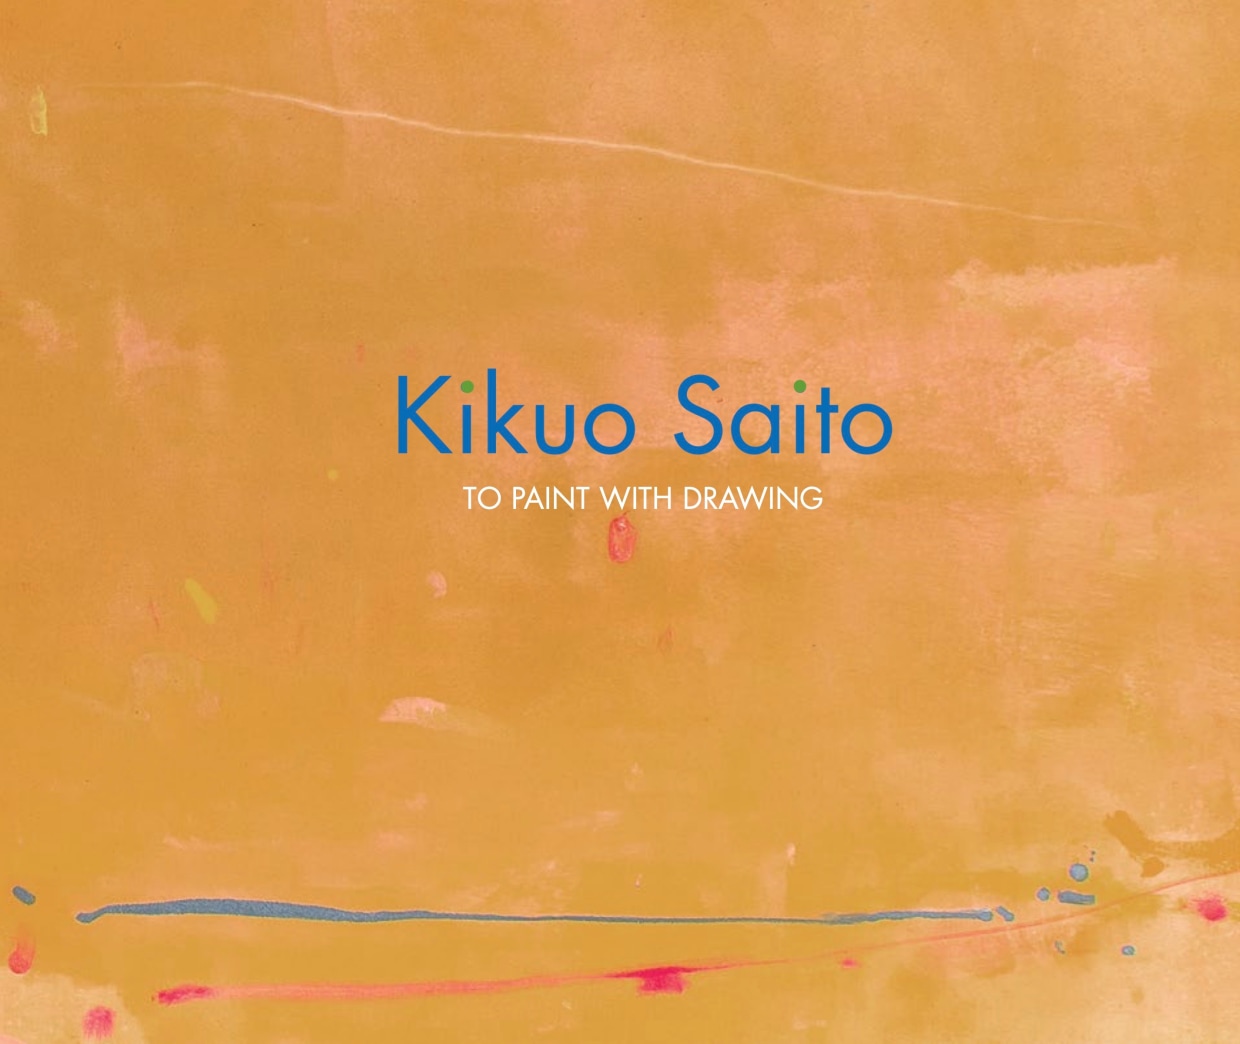 Kikuo Saito: To Paint with Drawing